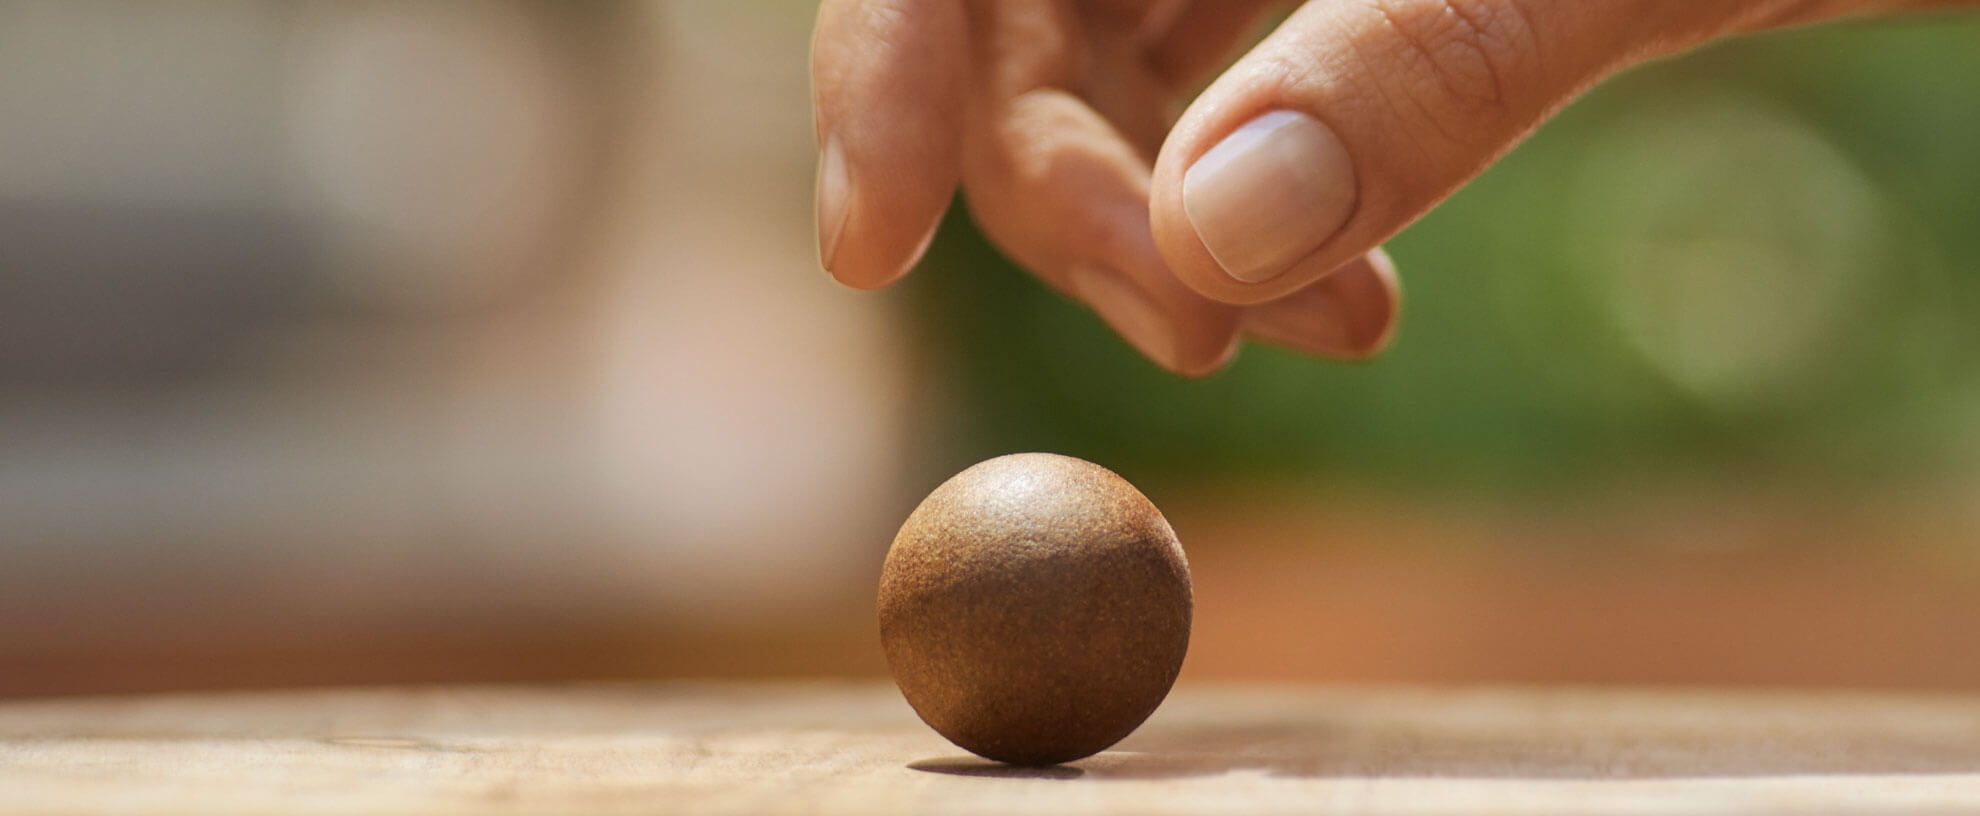 Eine Hand greift nach einem Coffee Ball, der auf einem Tisch liegt.